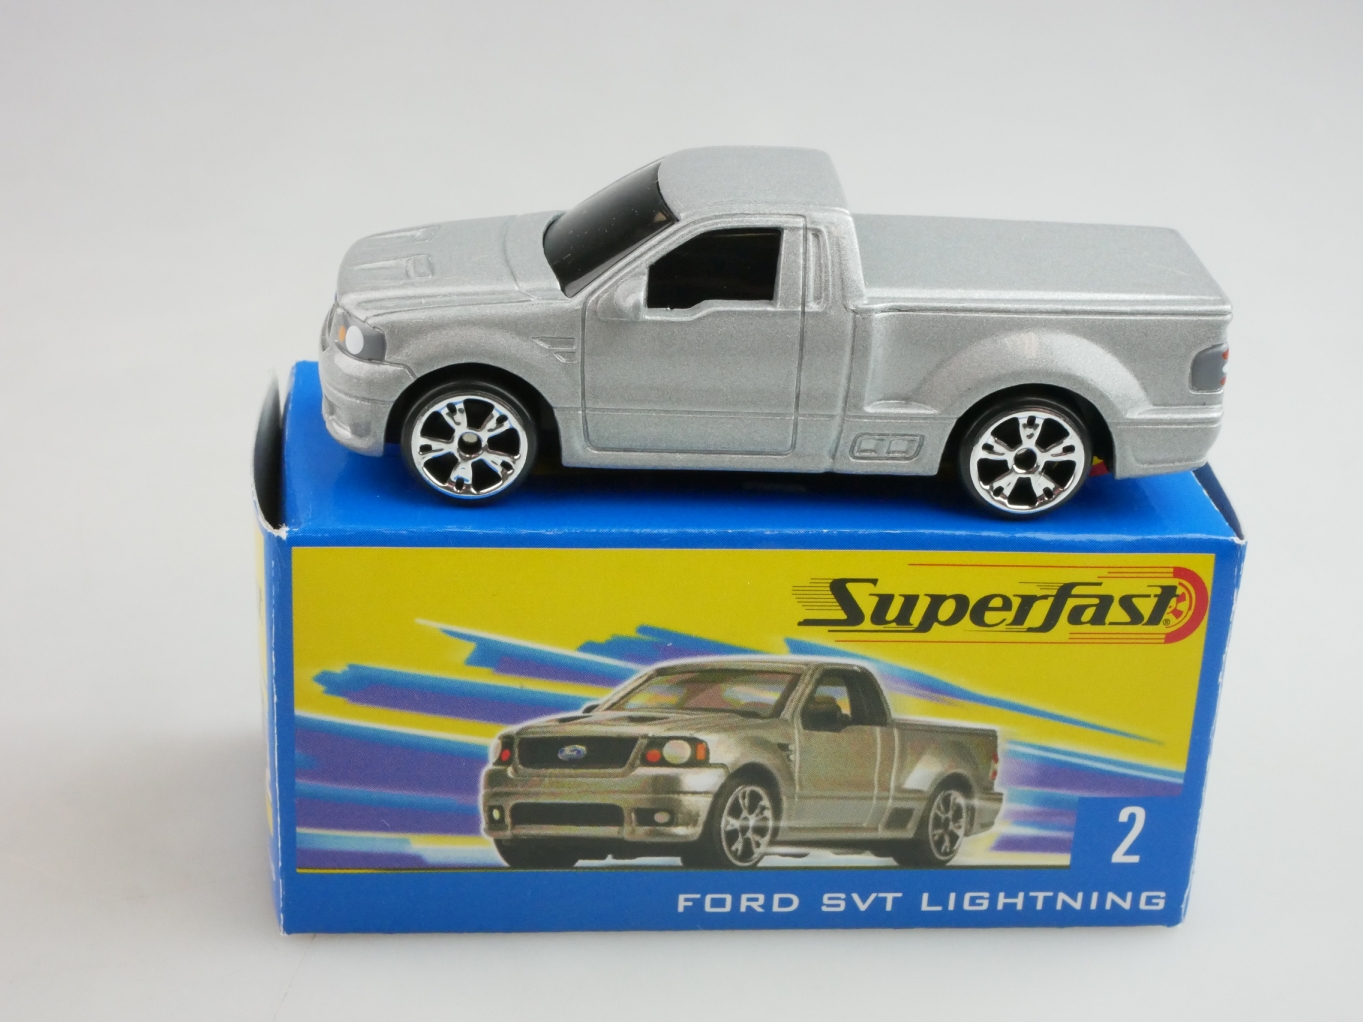 02 Ford SVT Lightning - 10459